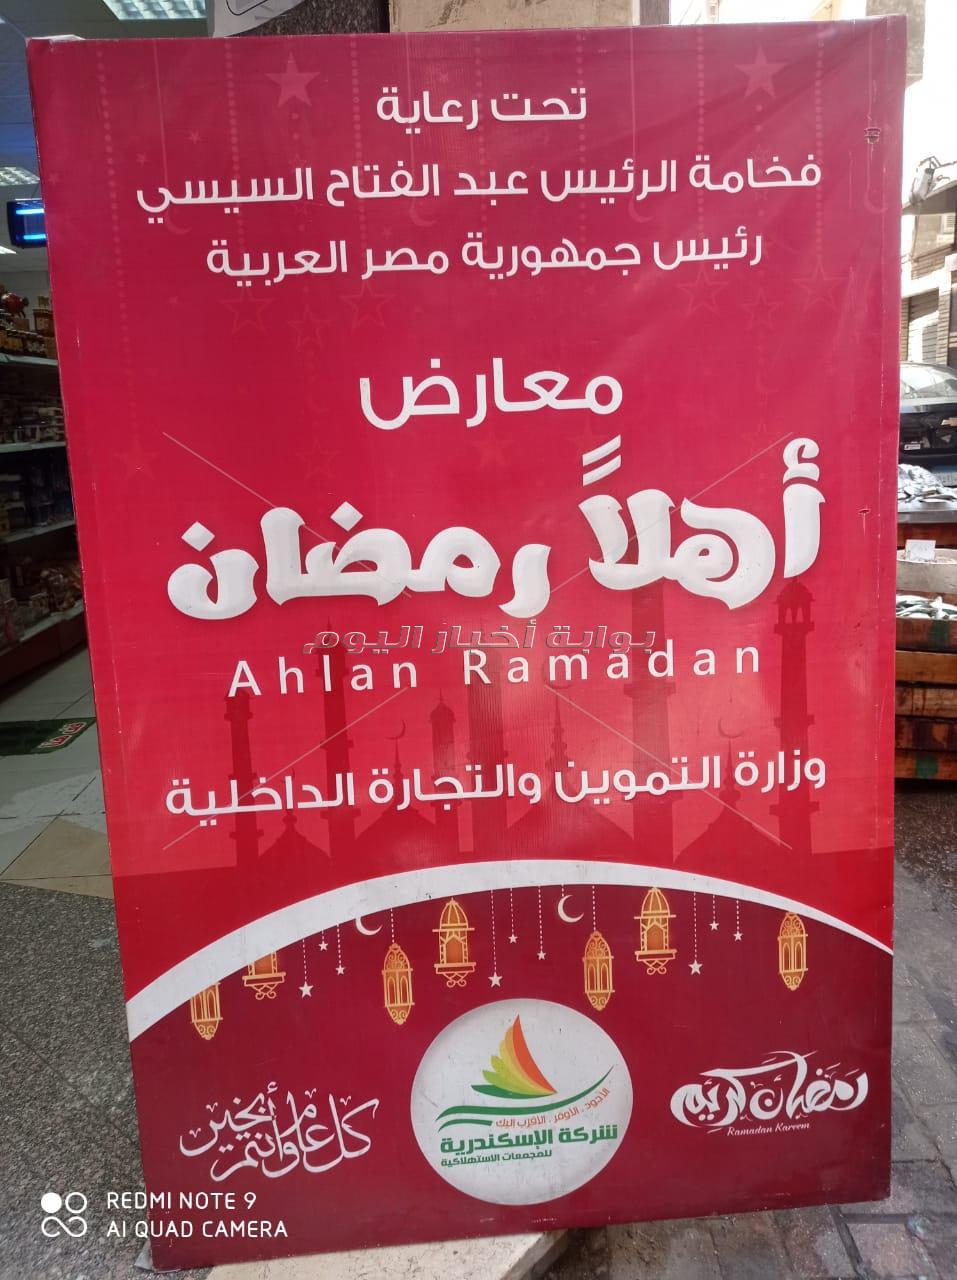 الاسكندرية تستعد لانطلاق معرض " اهلا رمضان " بارض كوته و المجمعات